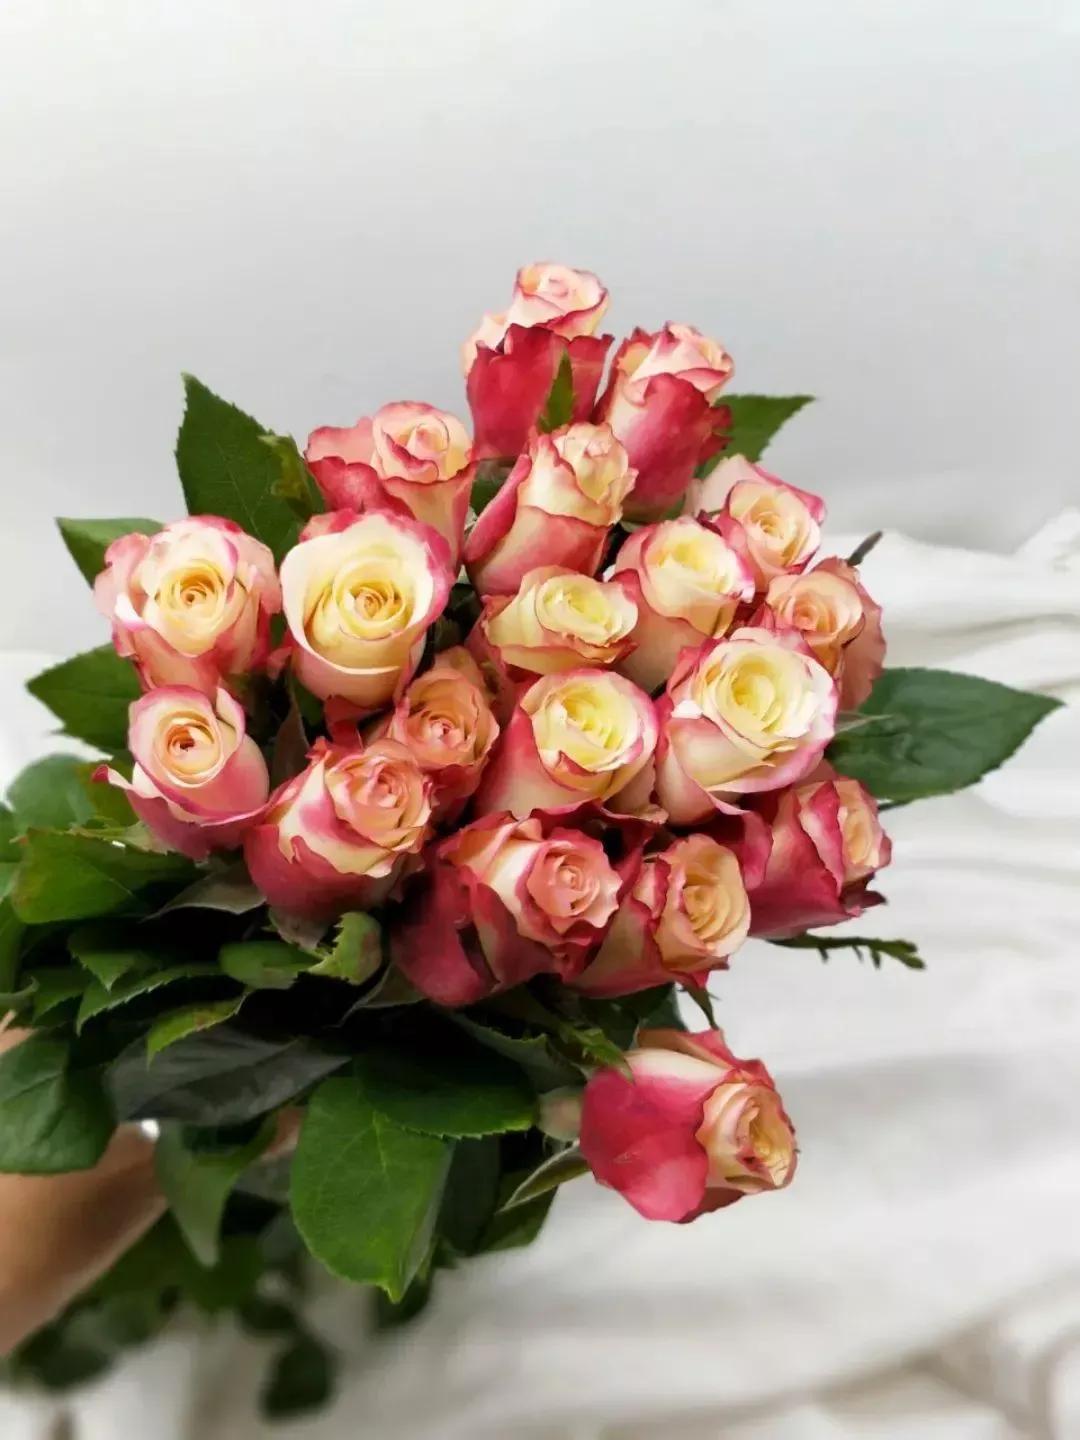 玫瑰种类名称及花语，常见几种玫瑰花及其花语介绍